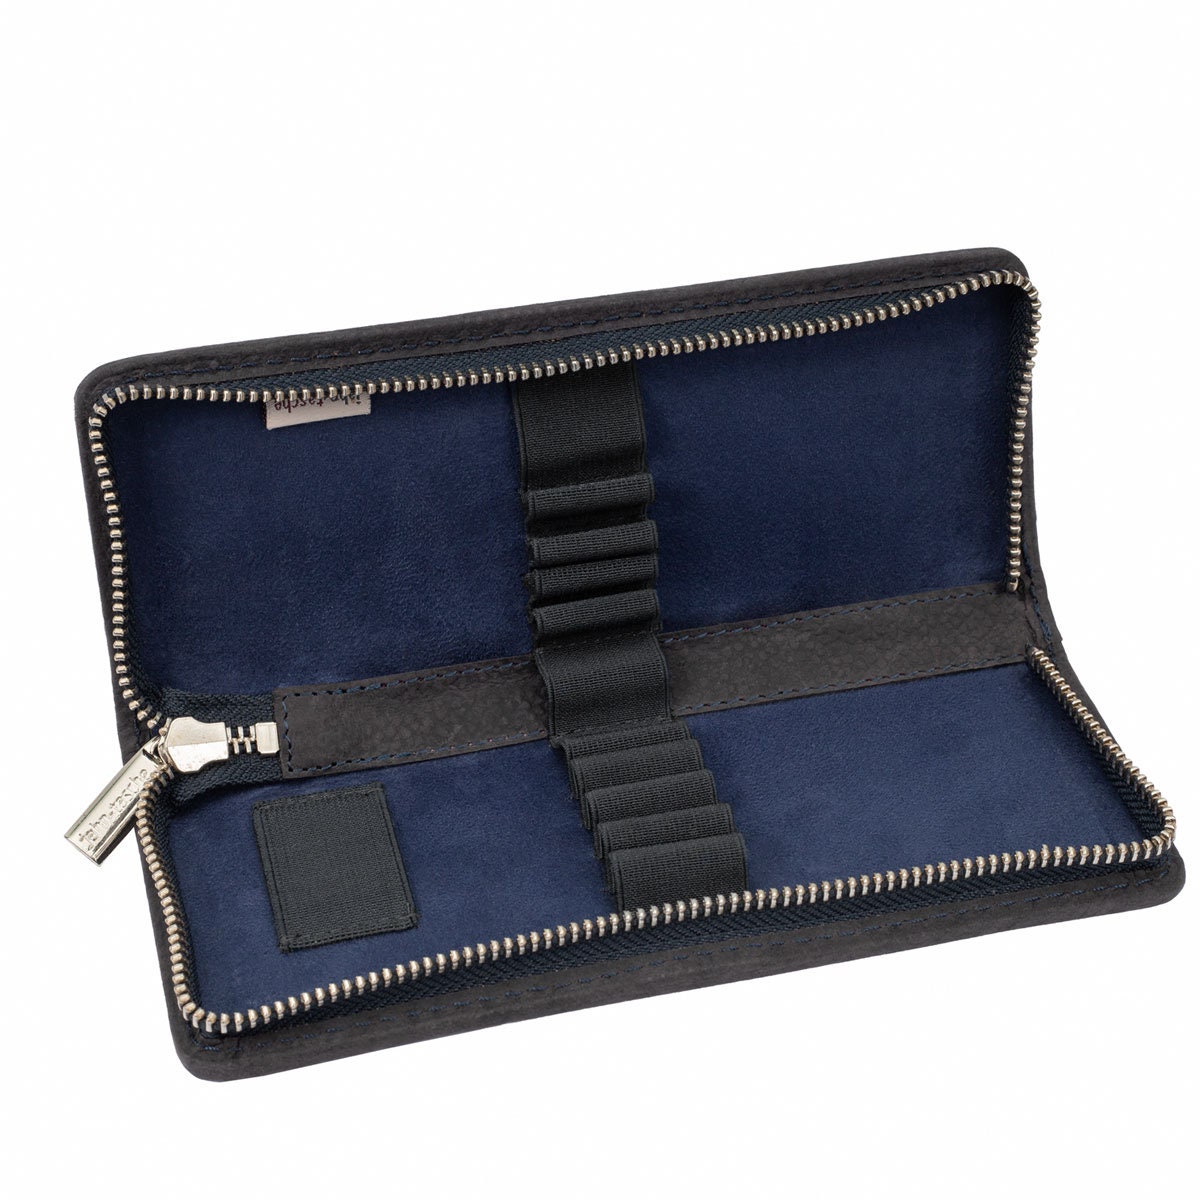 Gift Ideas: Exclusive Foldable Pencil Case / Leather Etui, Buffalo